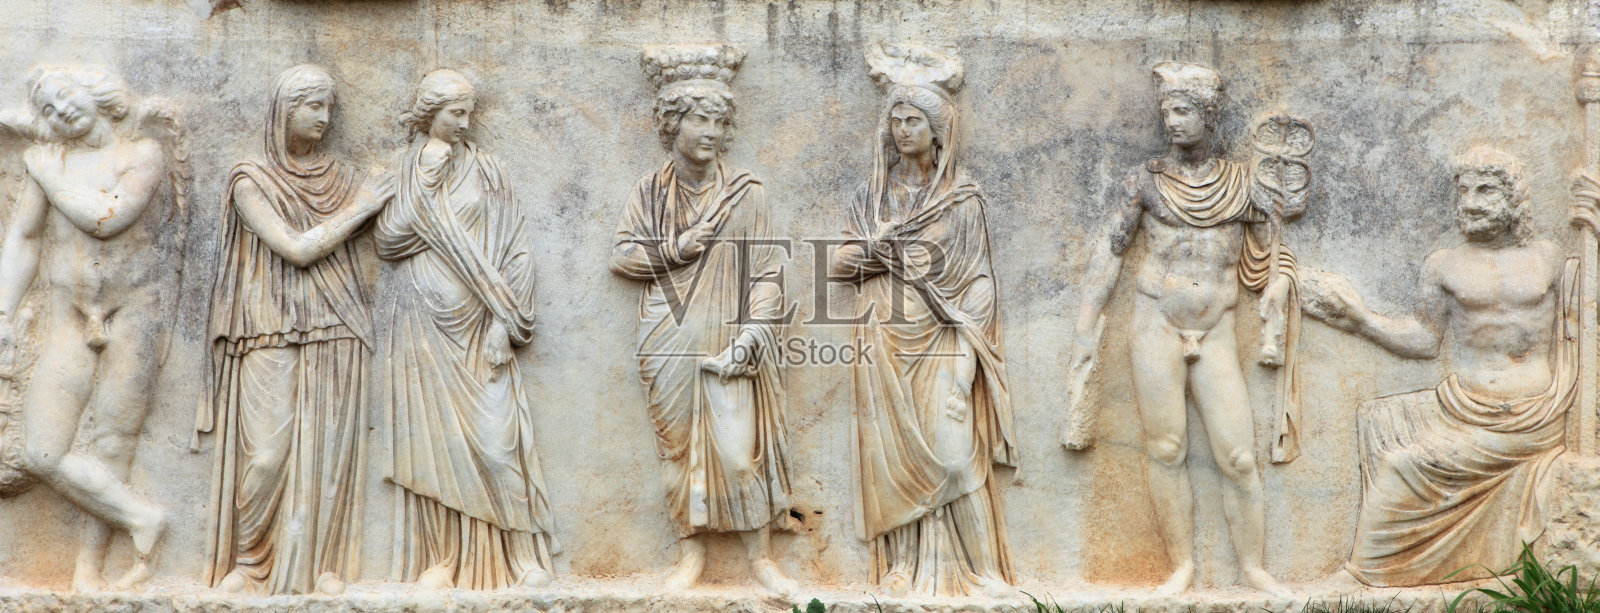 阿佛洛狄西斯石棺上的浮雕照片摄影图片